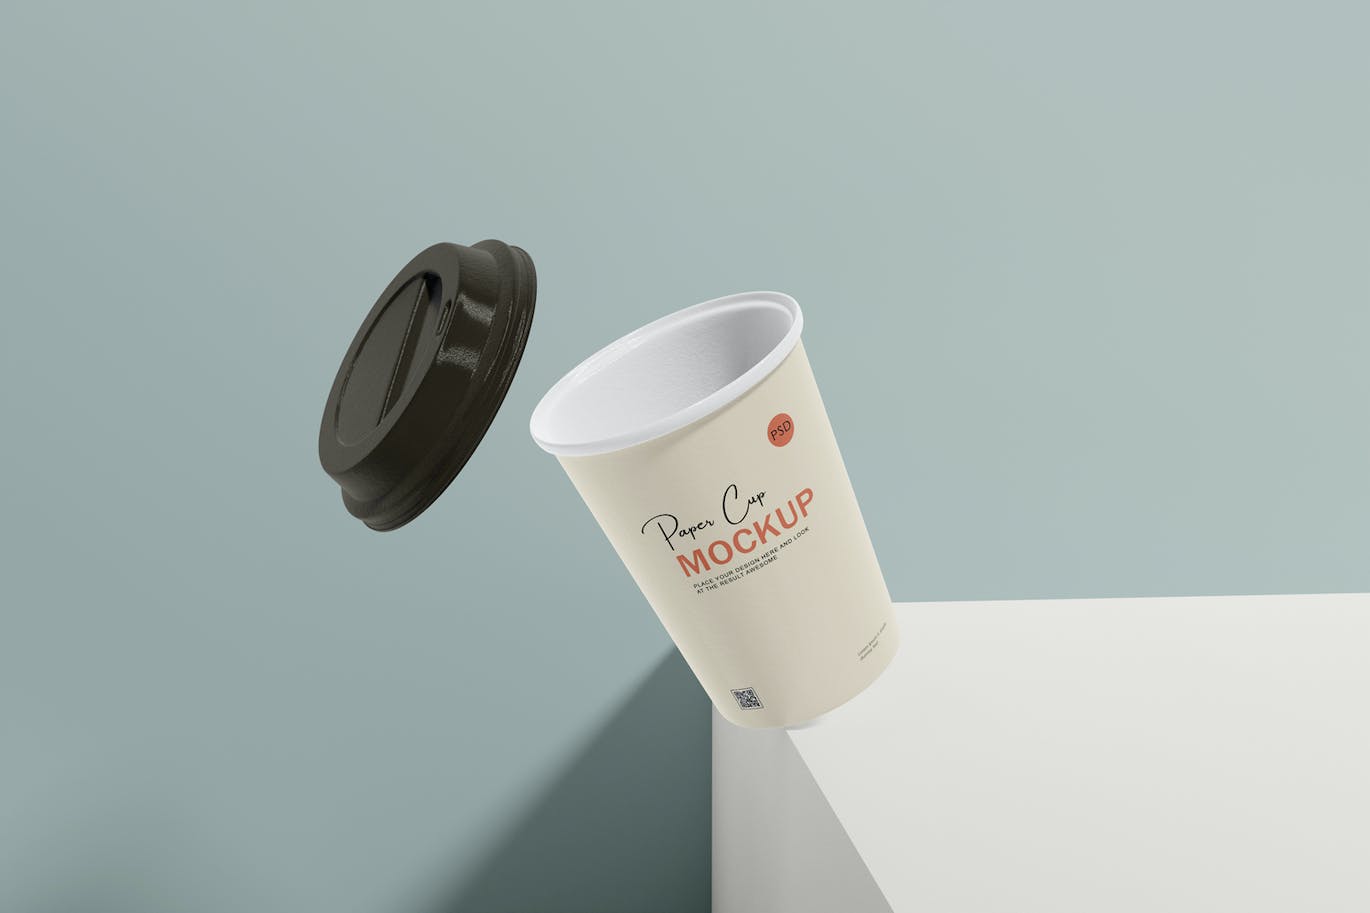 咖啡机咖啡杯包装设计样机 Coffee cup mockup with coffee machine 样机素材 第4张